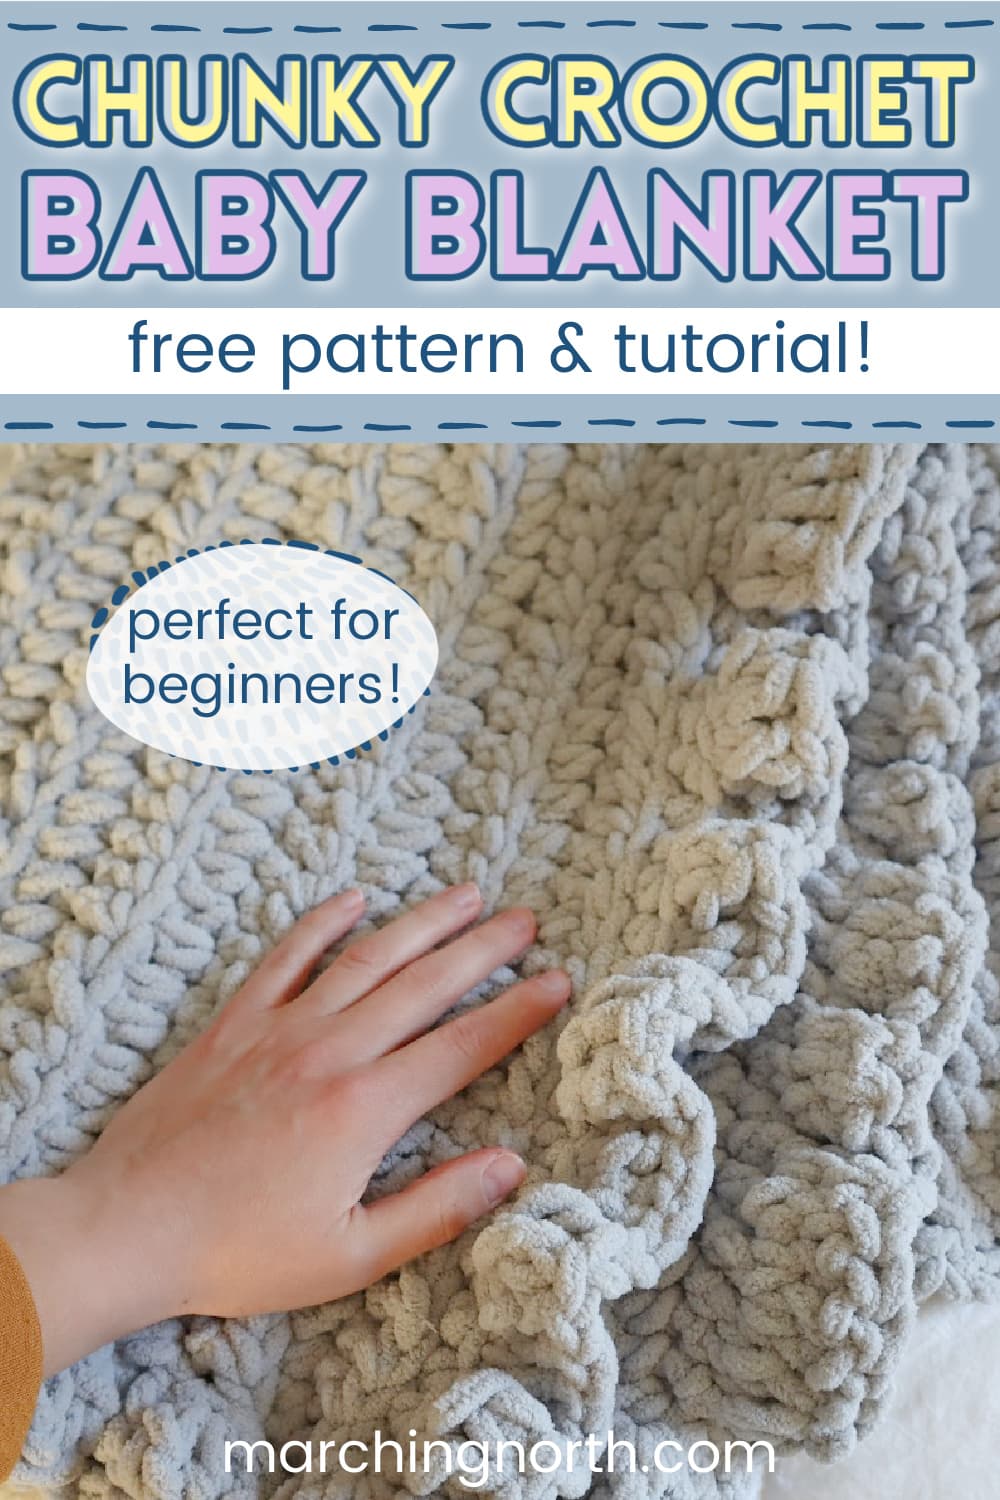 The Most Pretty & Easy Crochet Border Pattern for Beginners! Crochet Edging  for Baby Blanket - Massive Crochet